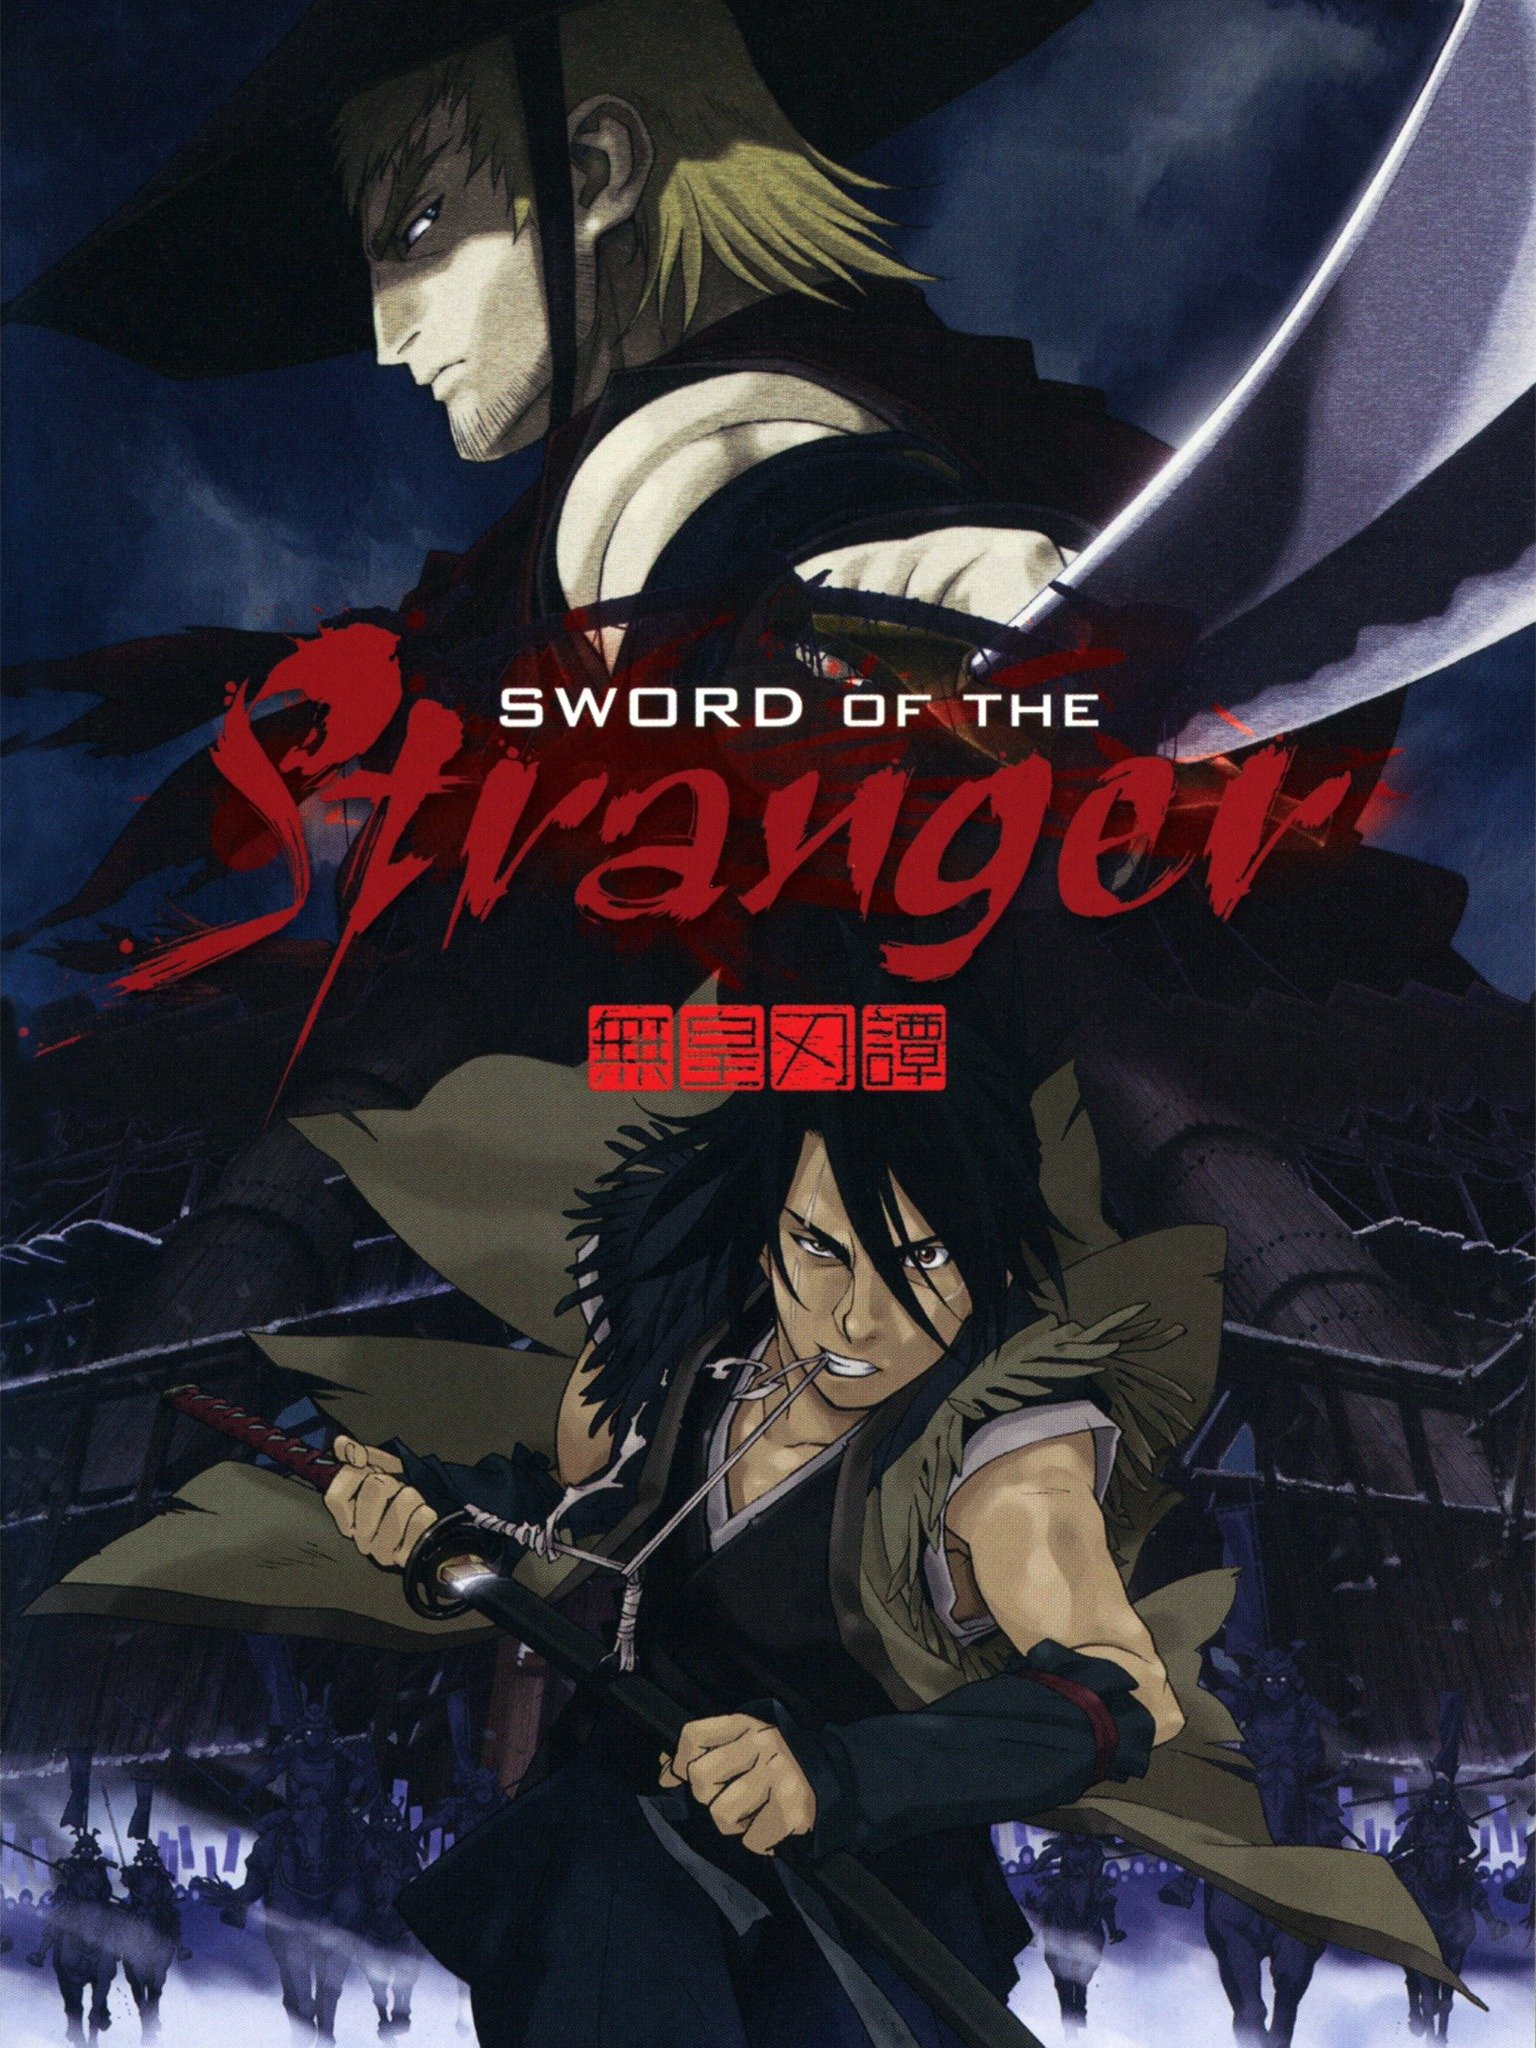 Anime picture sword of the stranger 2000x1488 239366 en